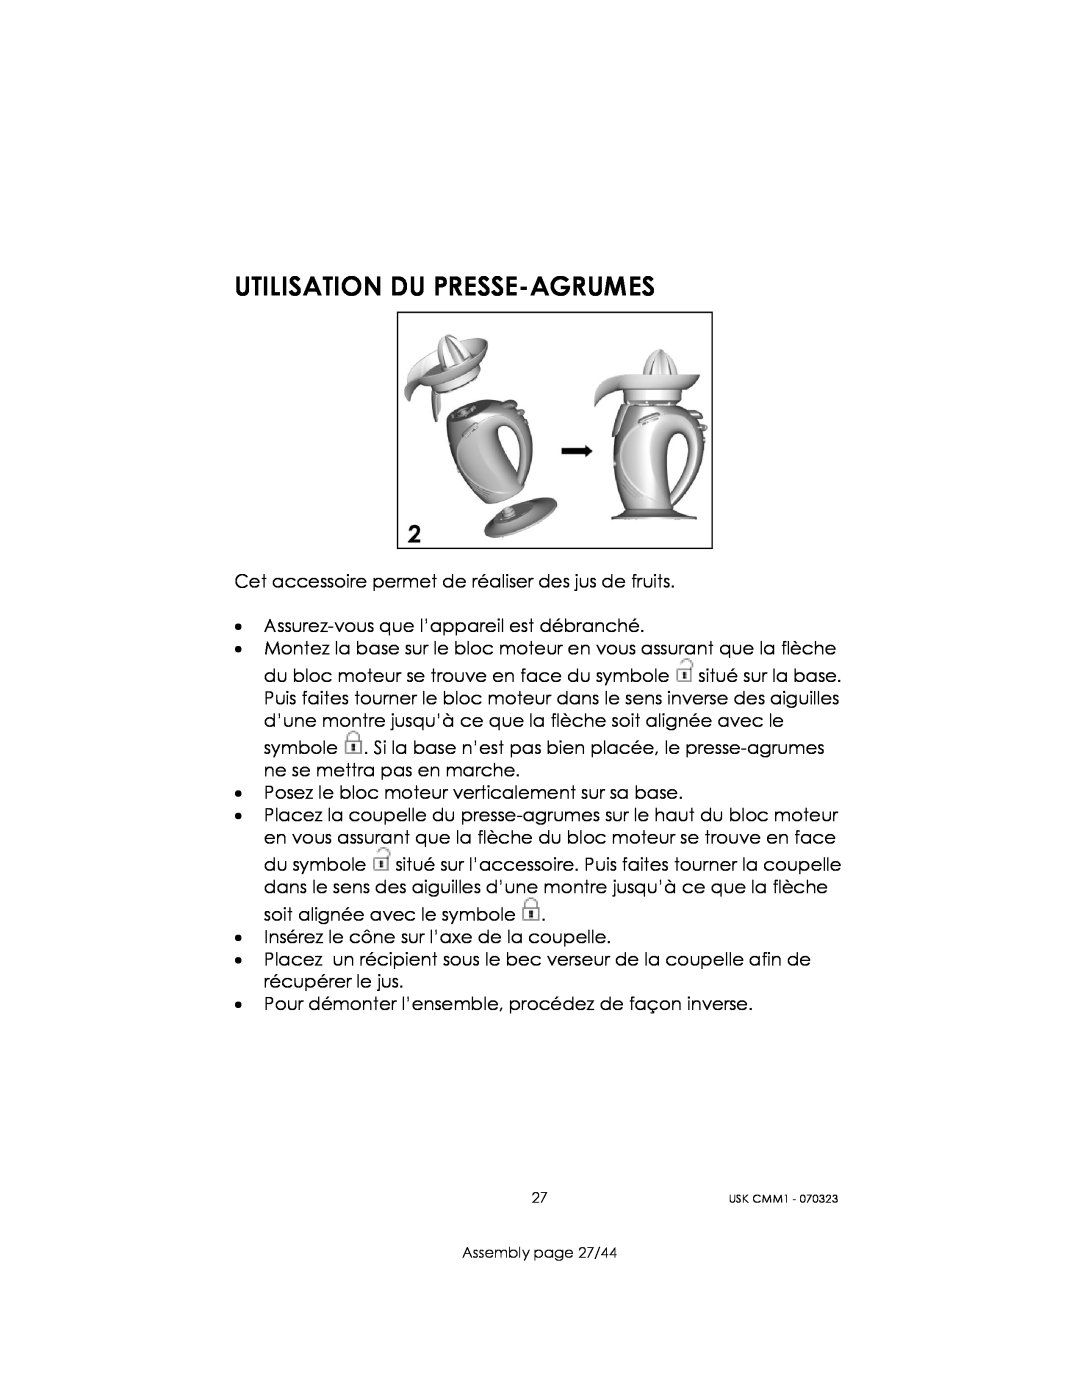 Kalorik USK CMM 1 manual Utilisation Du Presse-Agrumes, Assembly page 27/44 